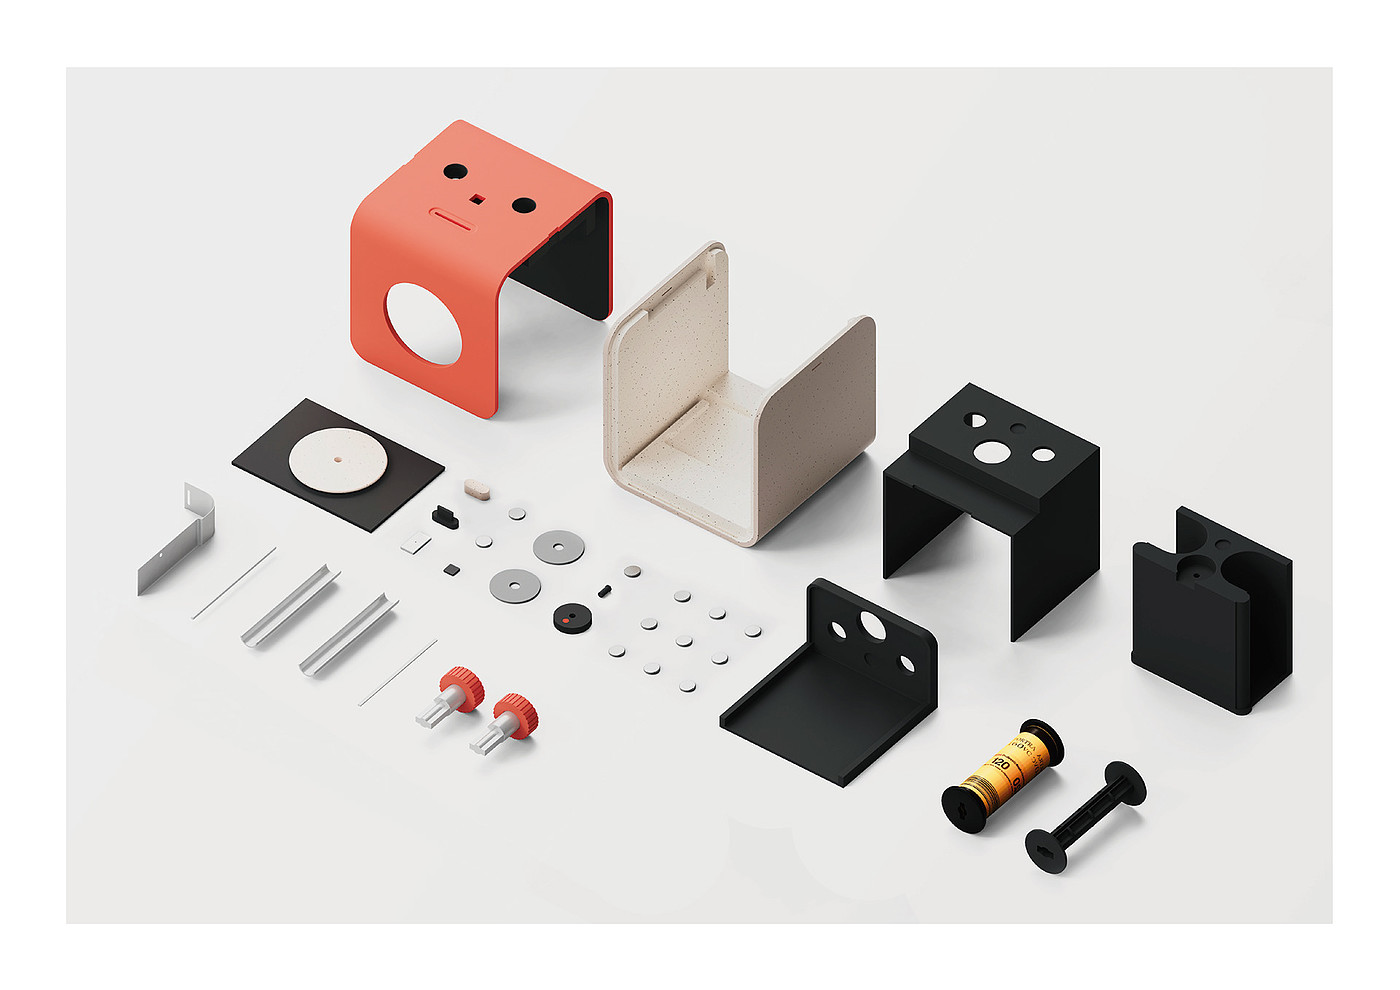 EYE-BOX，针孔摄像头，产品设计，新针孔相机概念，